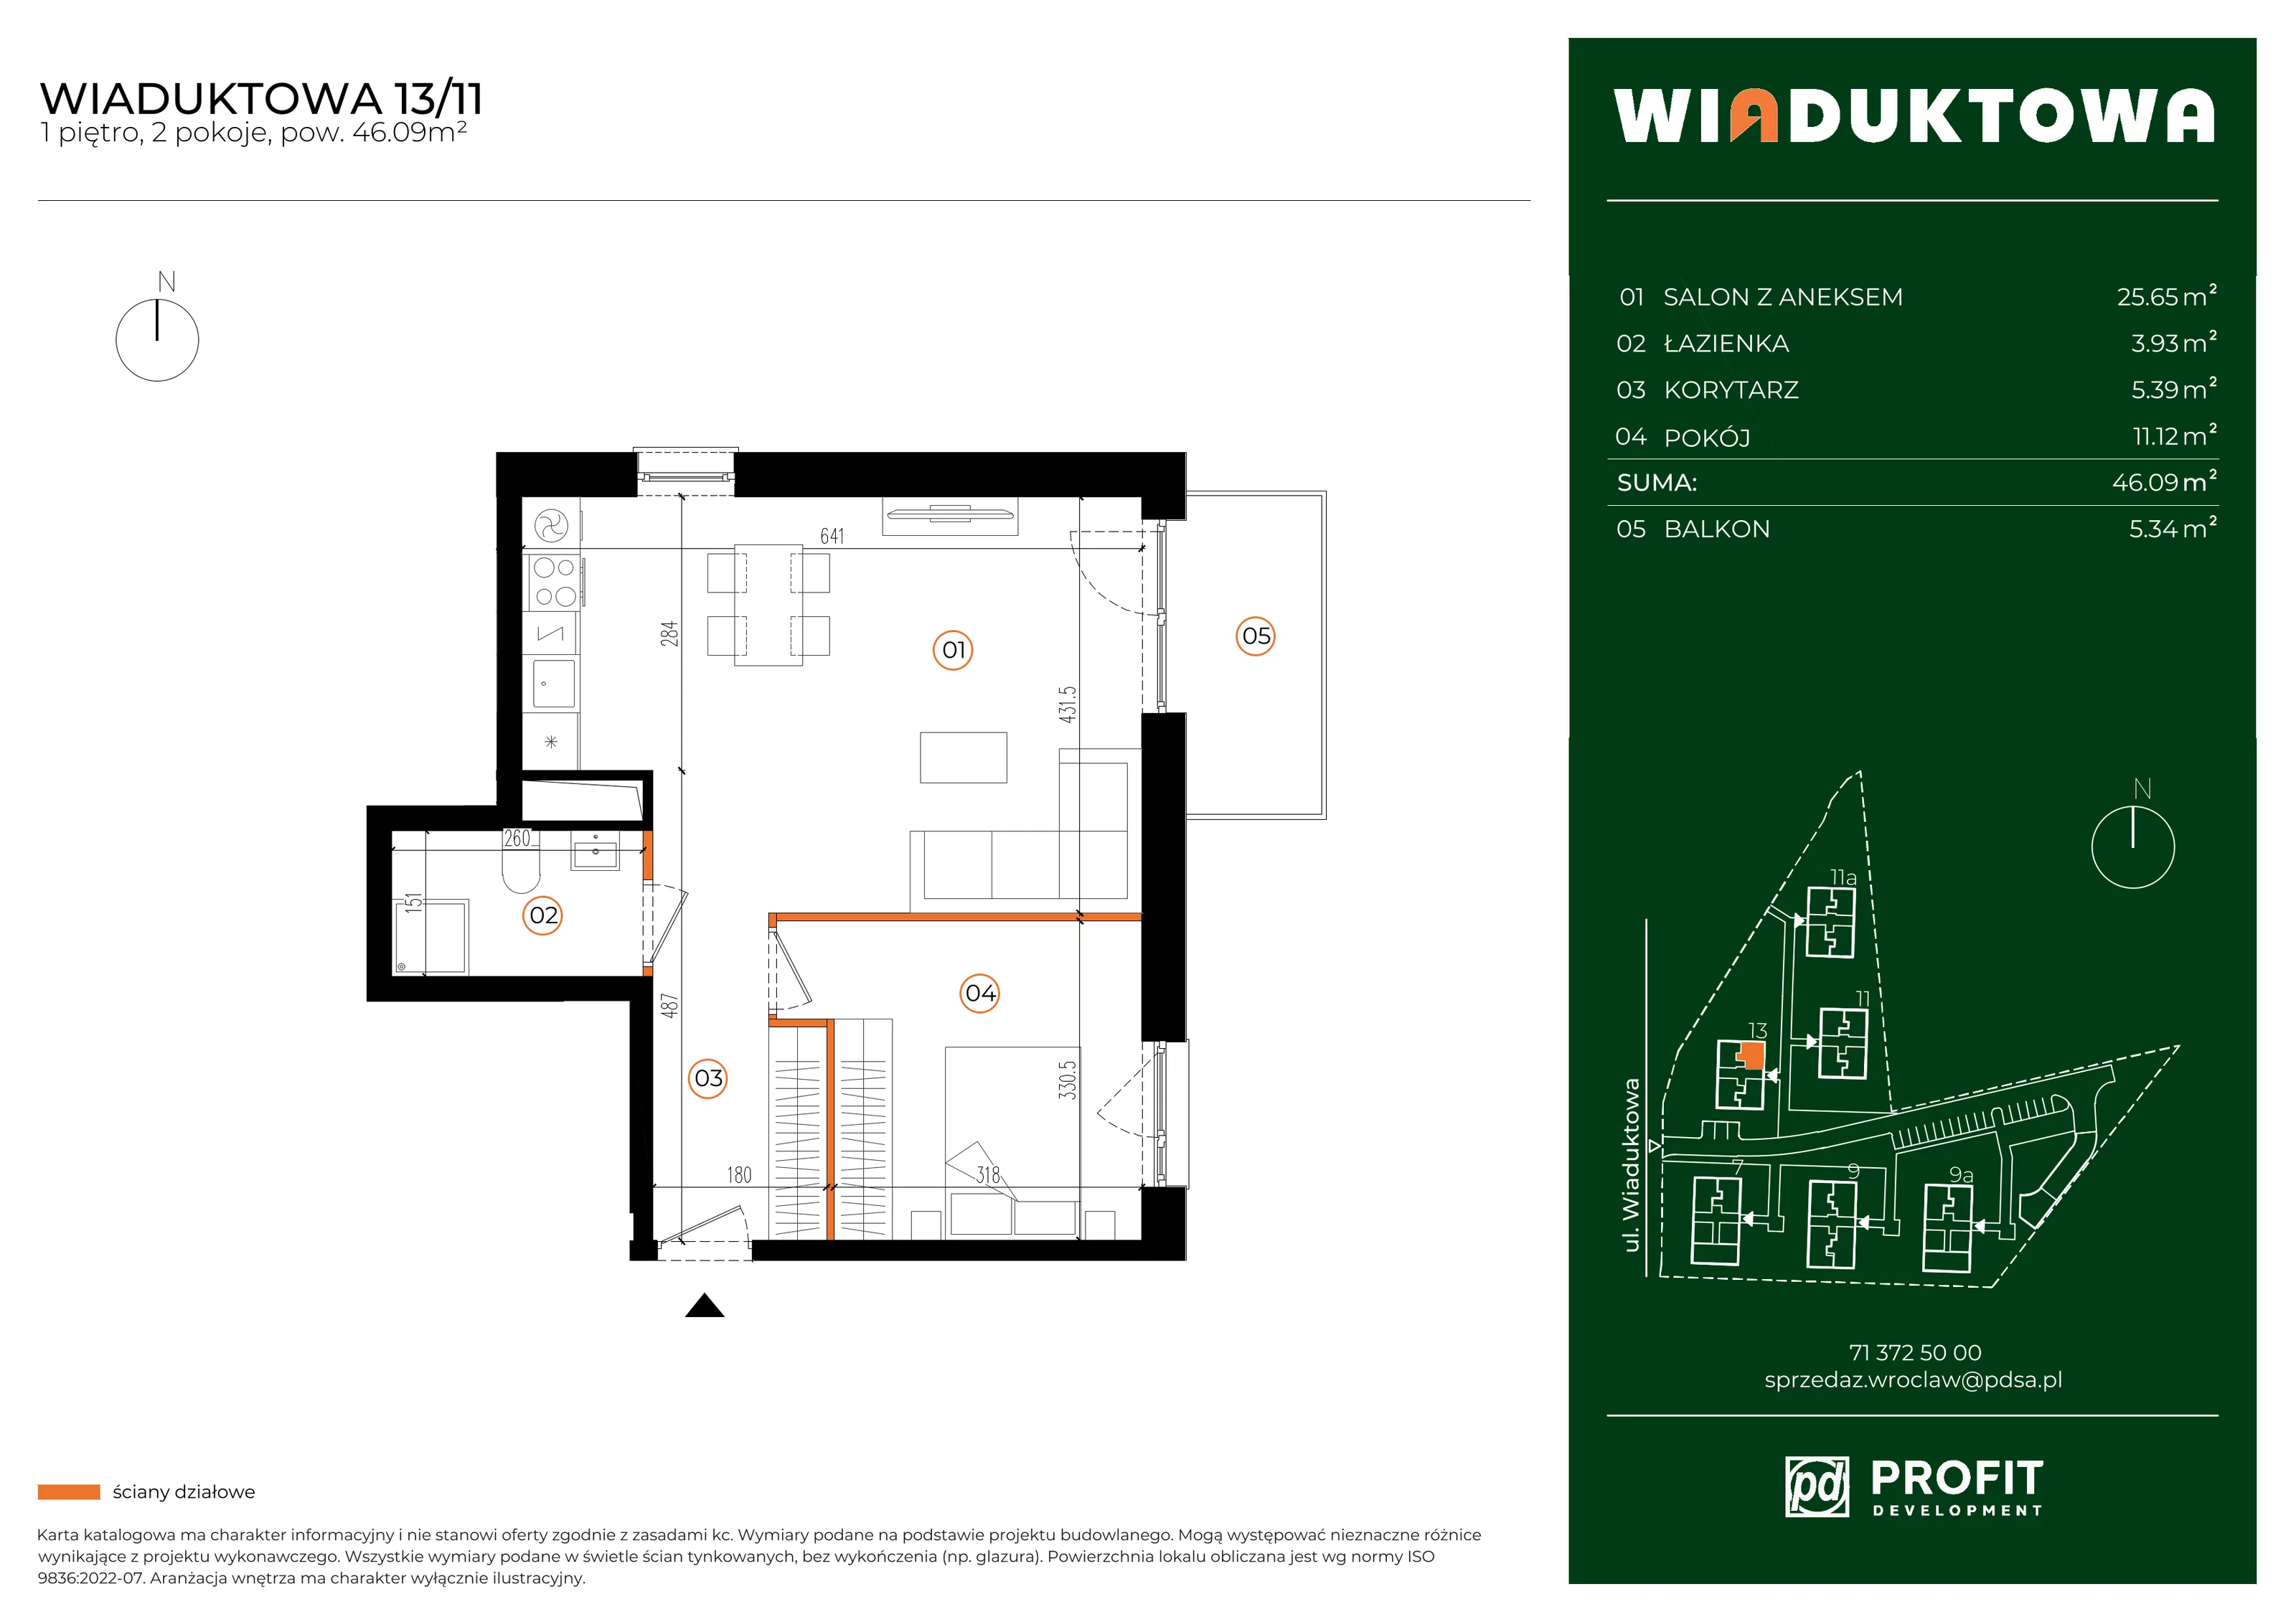 Mieszkanie 46,09 m², piętro 1, oferta nr WI/13/11, Wiaduktowa, Wrocław, Krzyki-Partynice, Krzyki, ul. Wiaduktowa